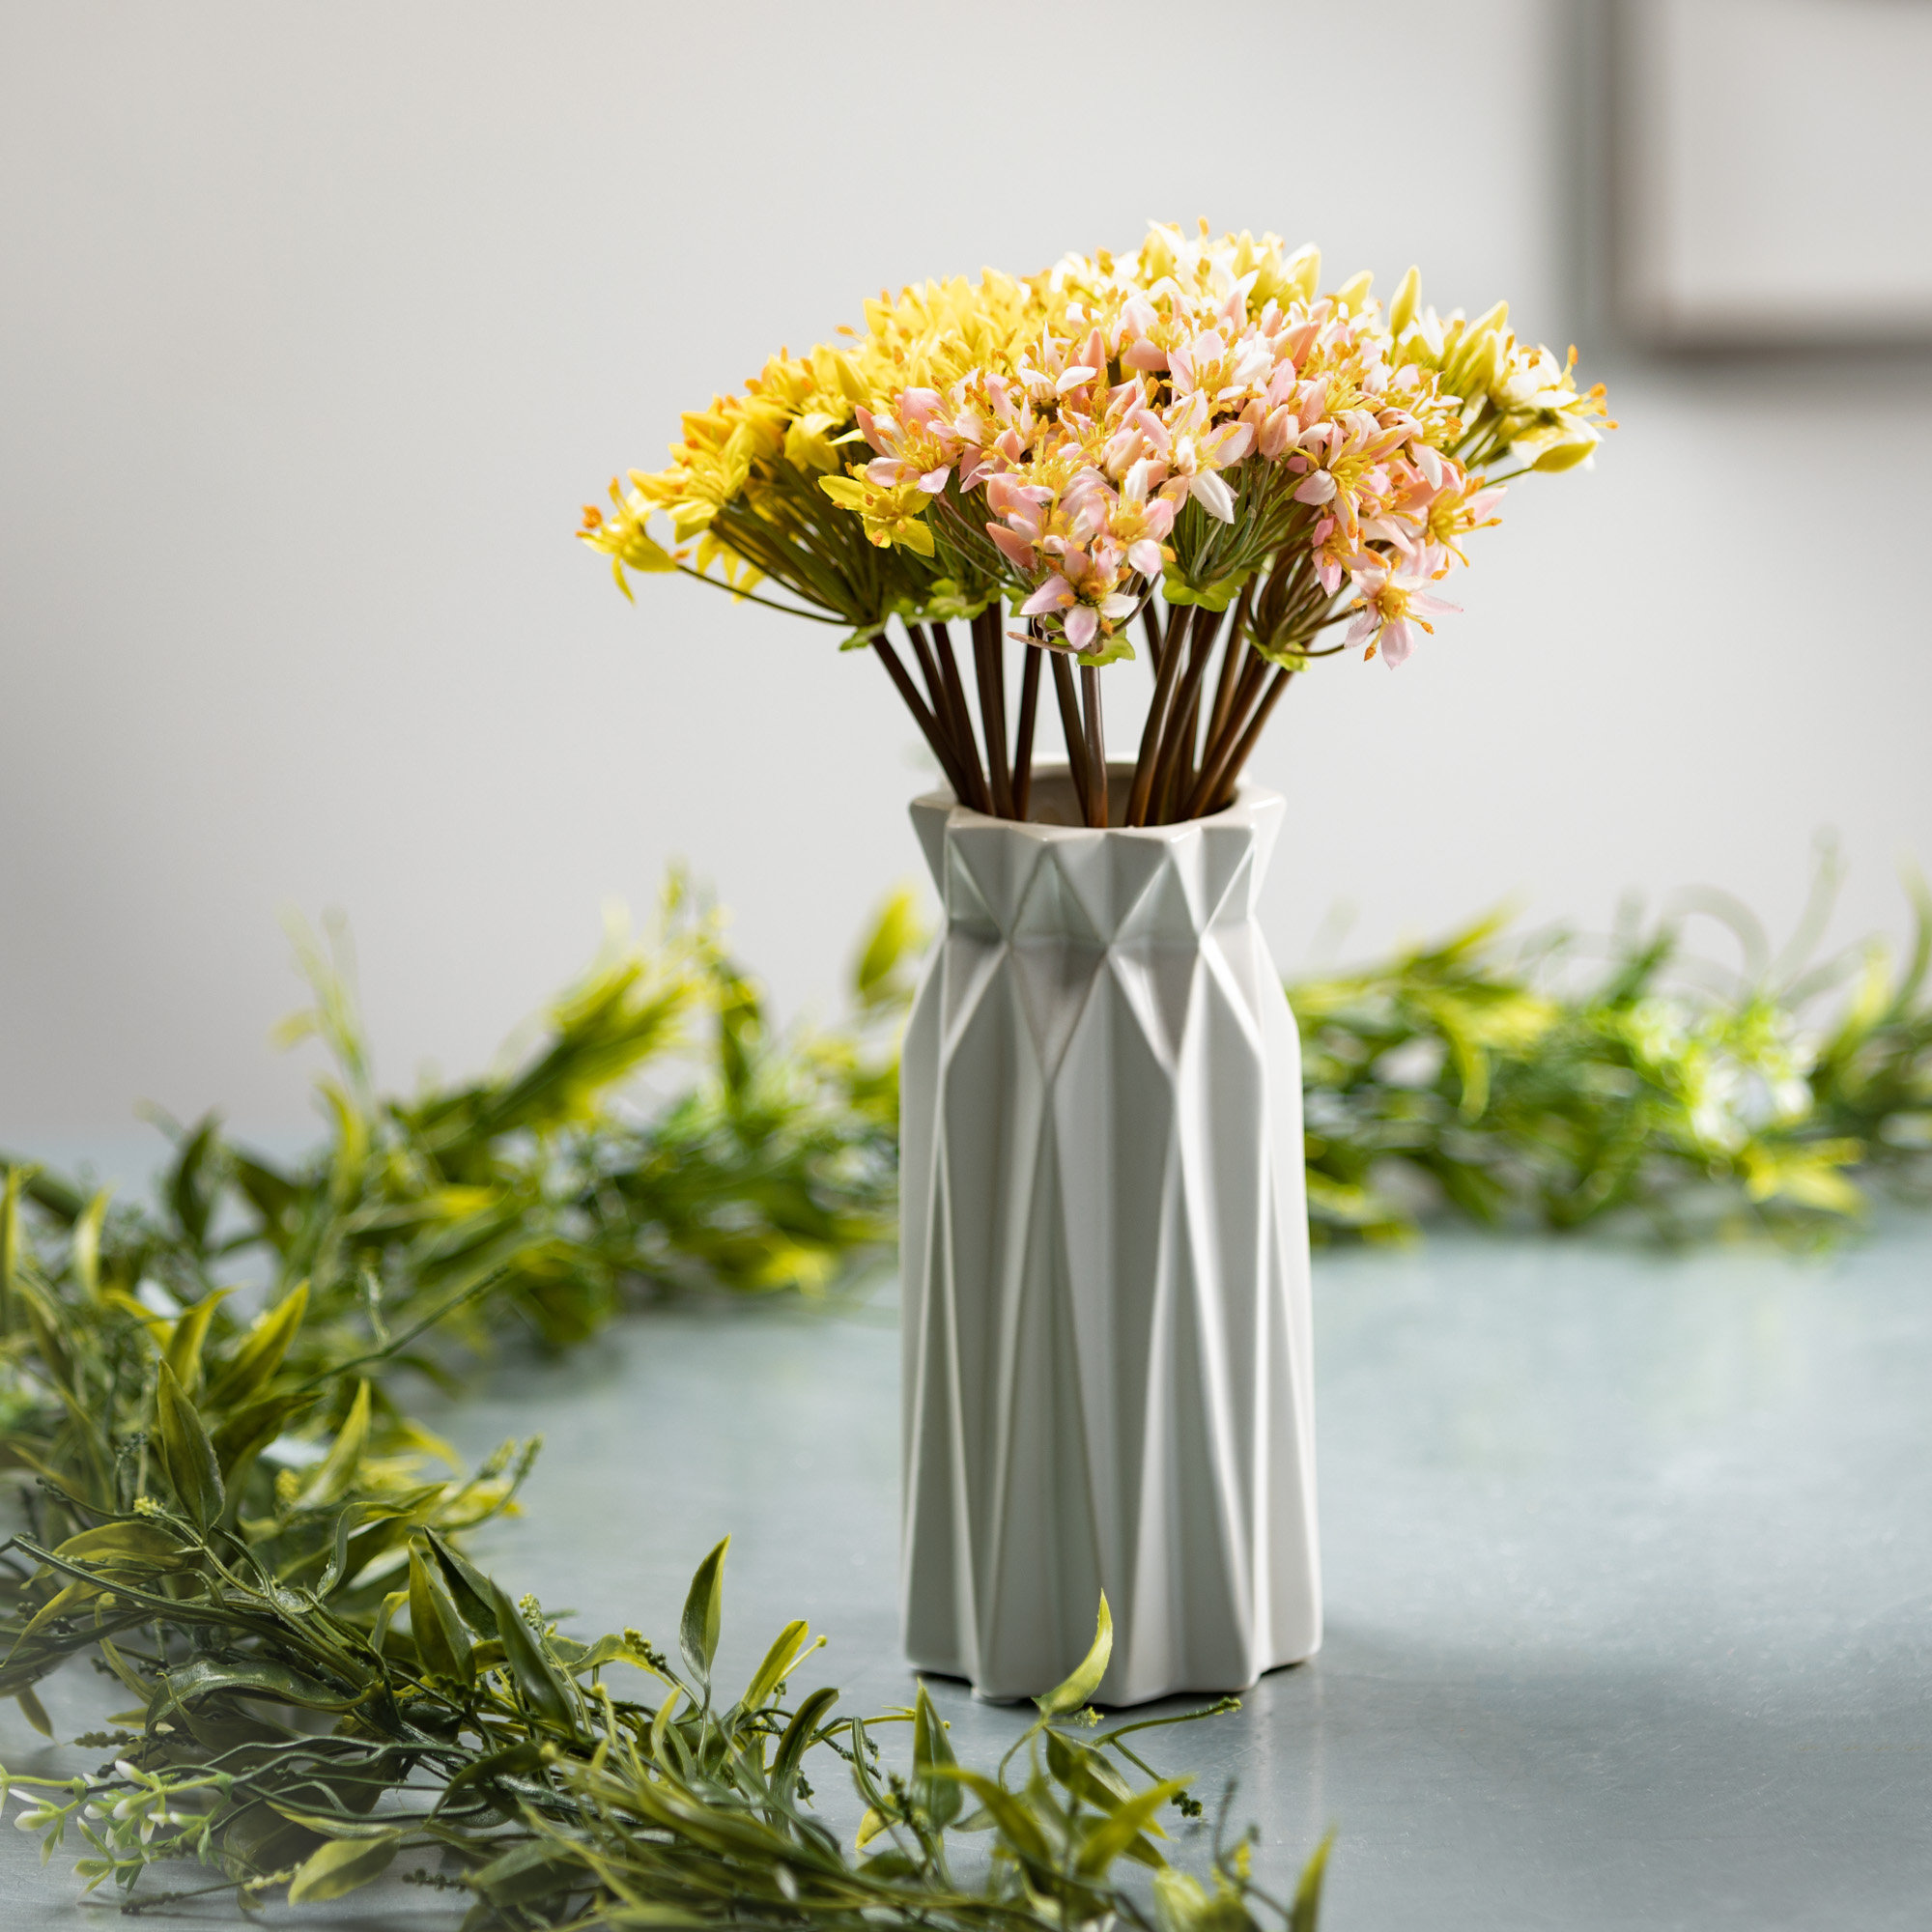 Contemporary White Ceramic Unique Geometric Shaped Table Vase Flower Holder Corrigan Studio